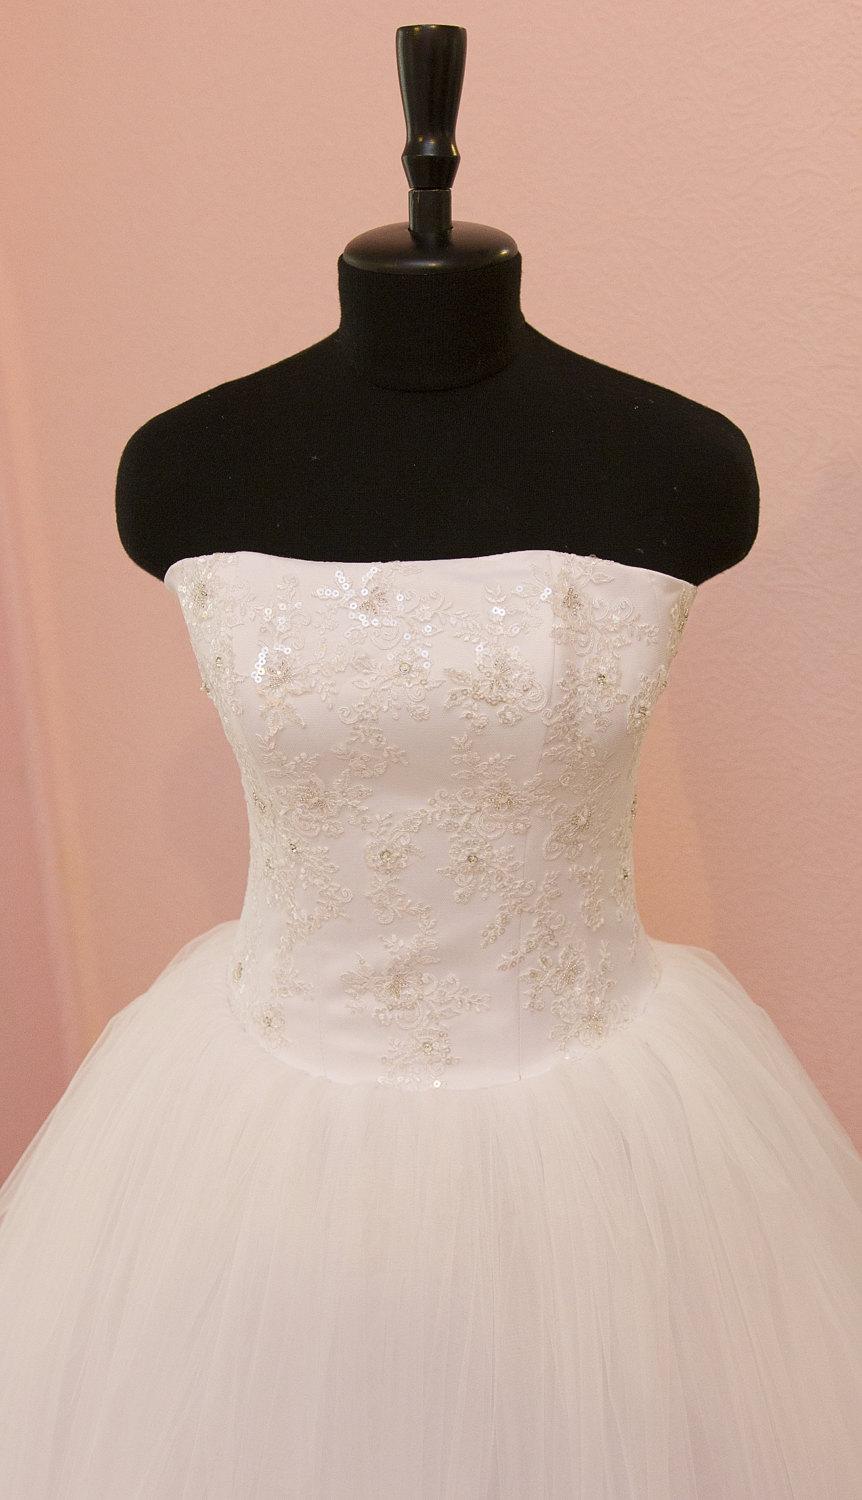 زفاف - Princess Ball Gown Light-As-Air Wedding Dress with Tulle Skirt and Lace Corset Embroidered with Swarovski Crystals and Sequins